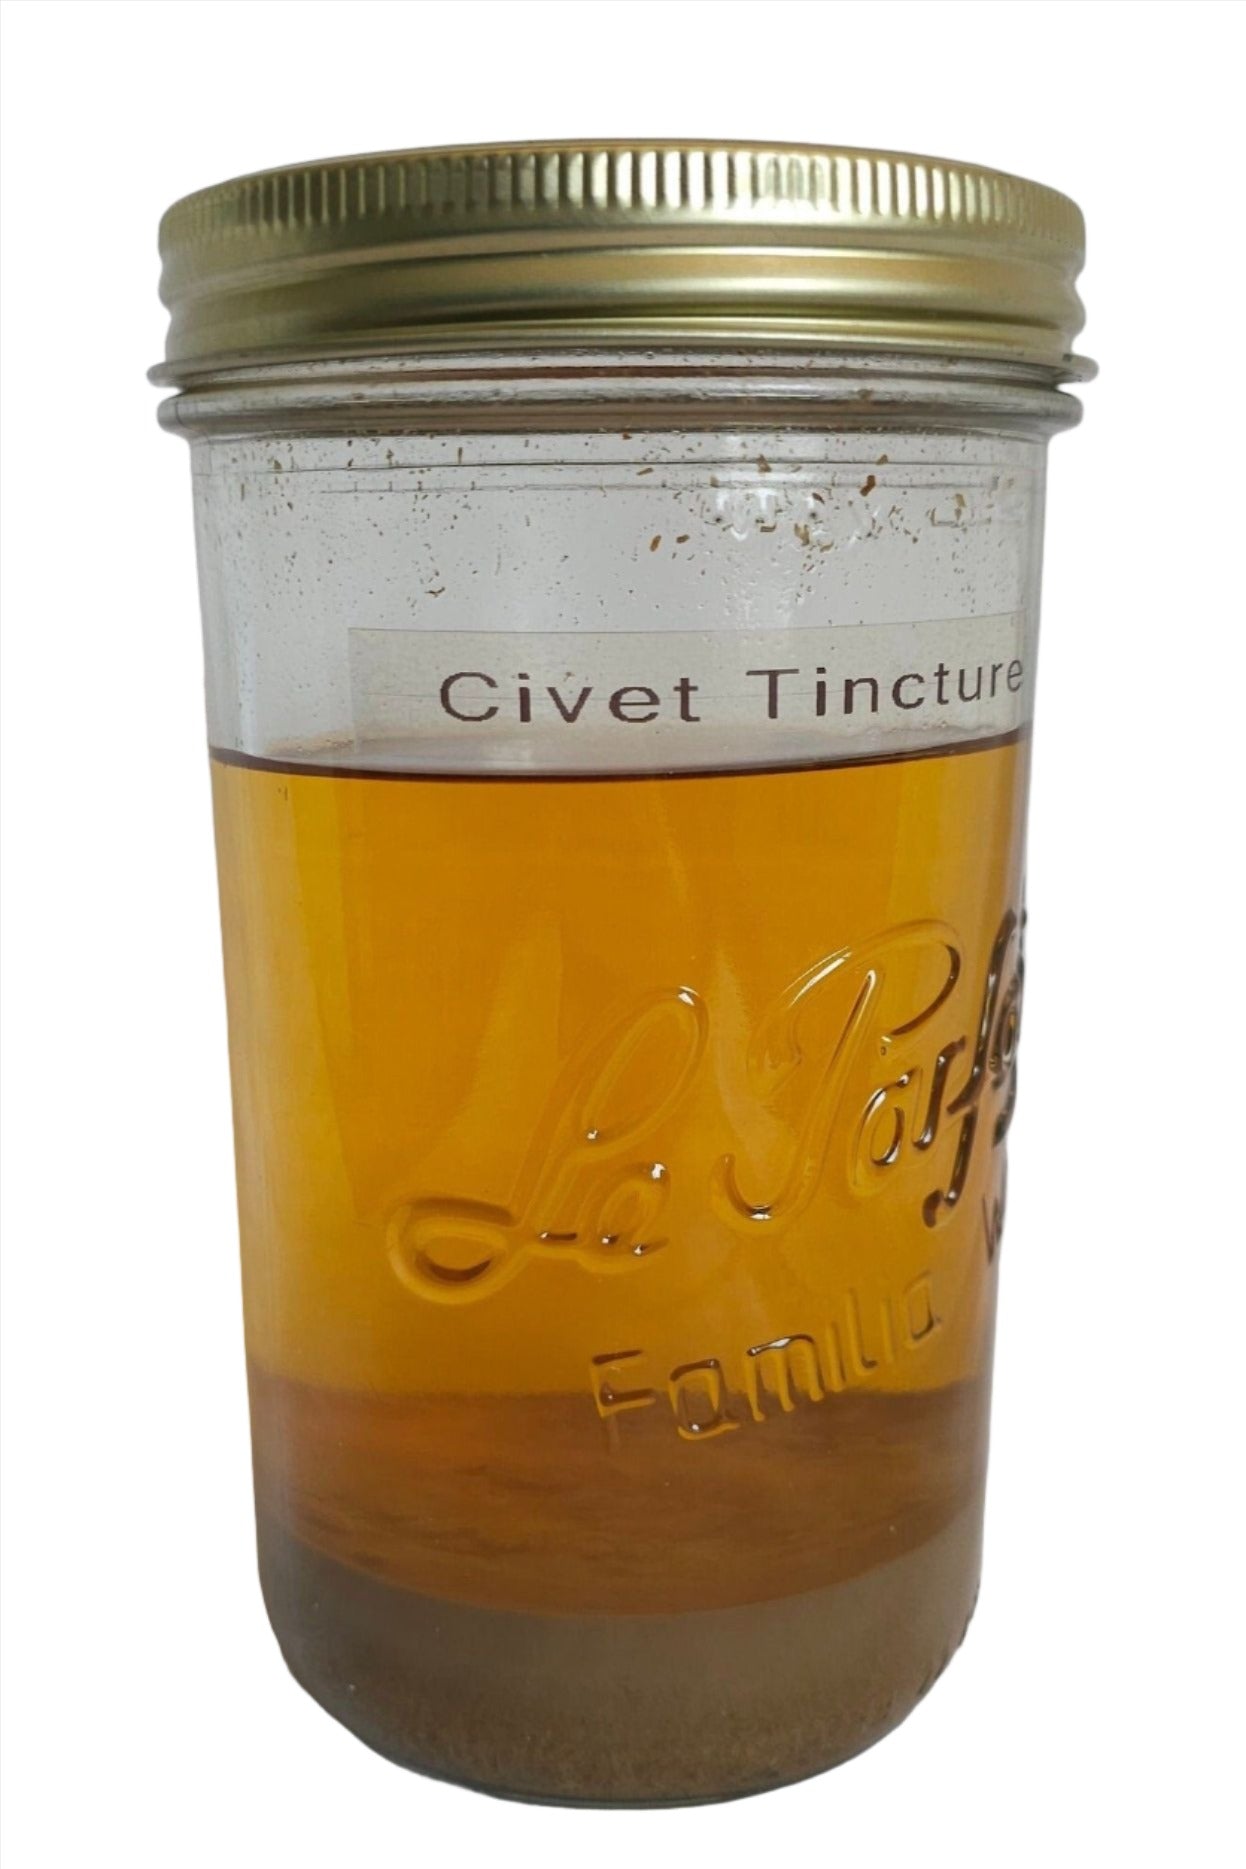 Civet Tinctuur 5%, Ethiopische civetpasta